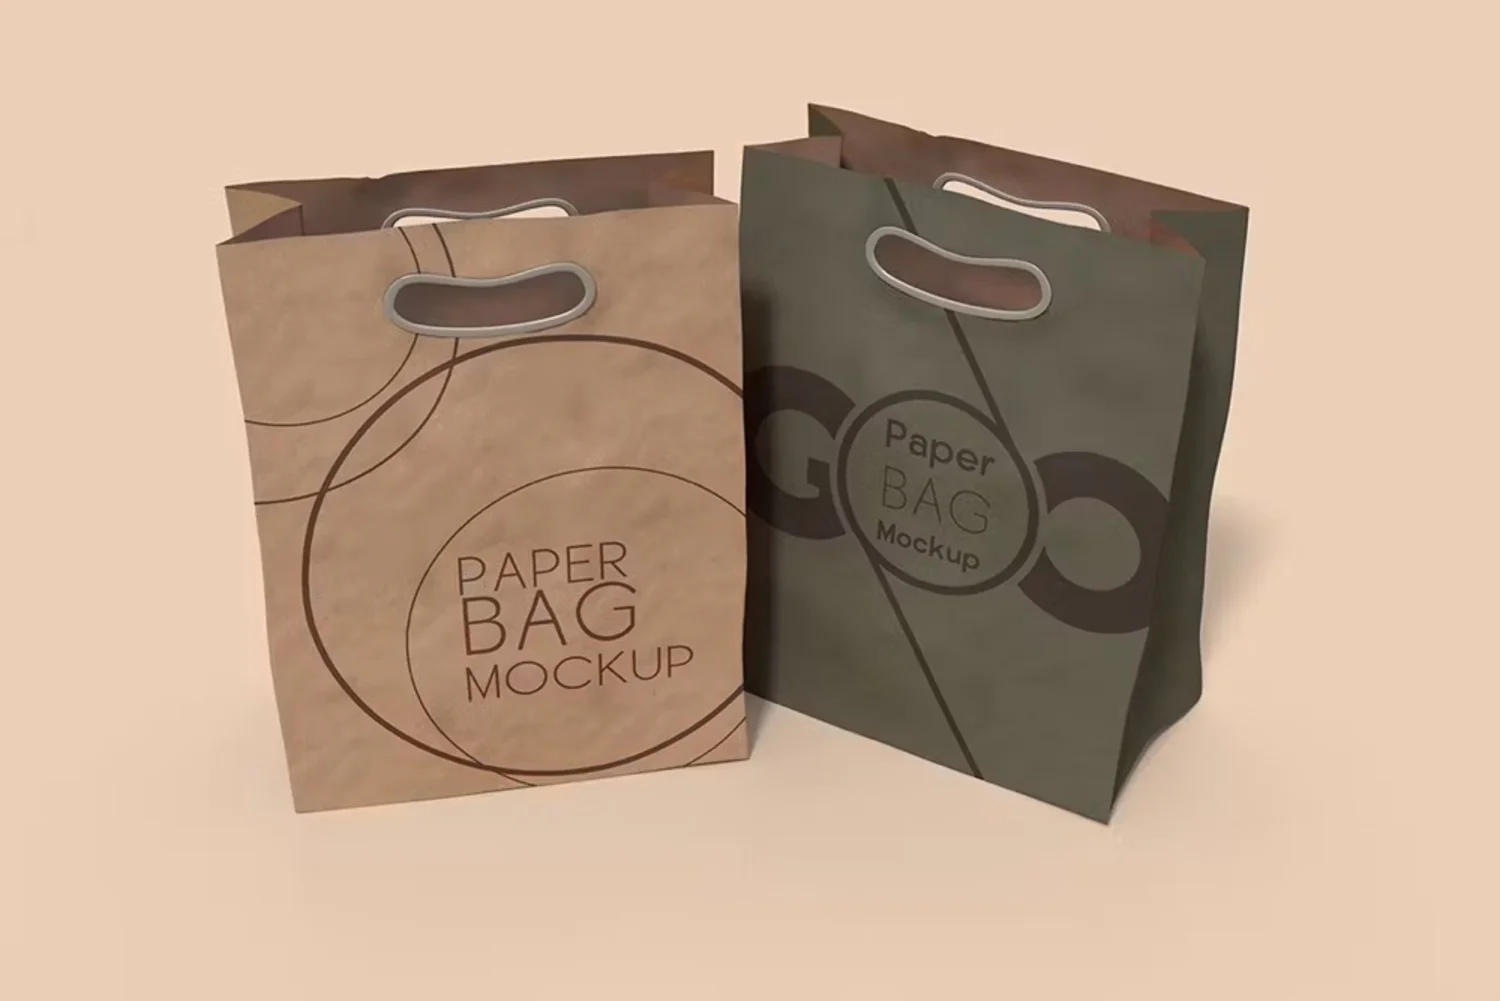 5118 时尚便携牛皮纸手提包装袋设计展示 PSD 样机Paper Bag Mockup@GOOODME.COM